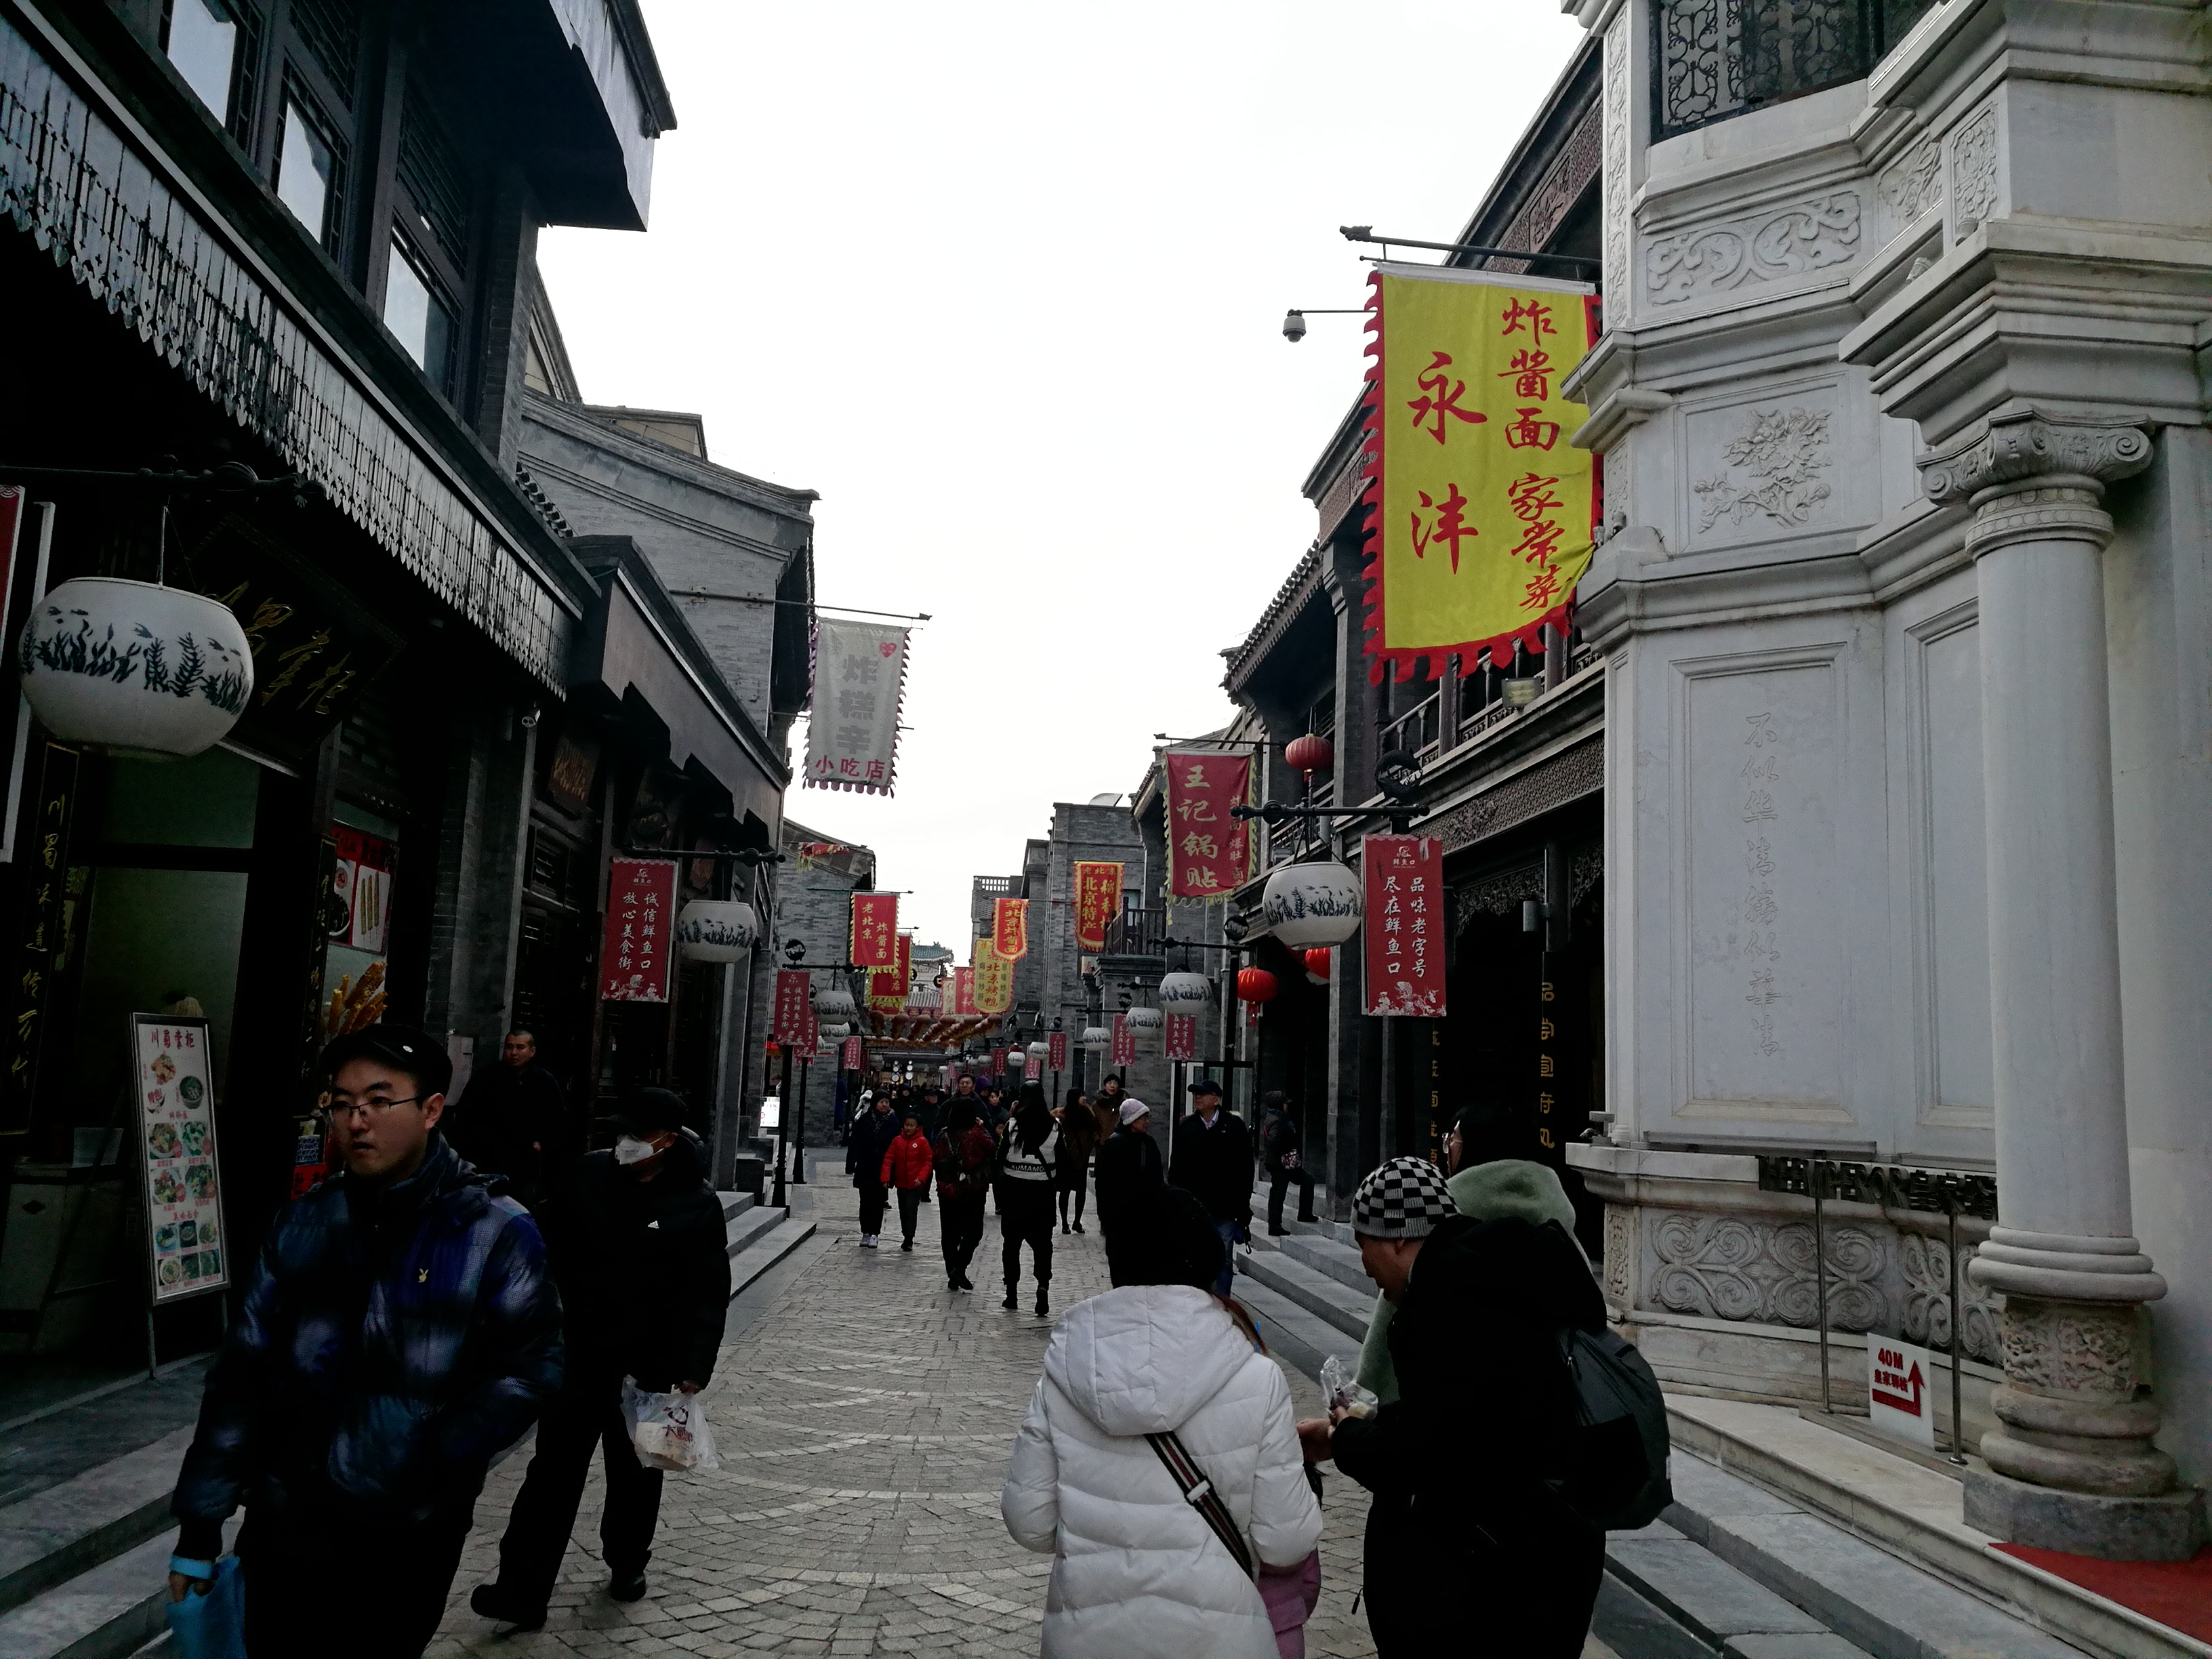 北京前门地区的鲜鱼口美食街也出现萧条:连续的三家店铺都关门